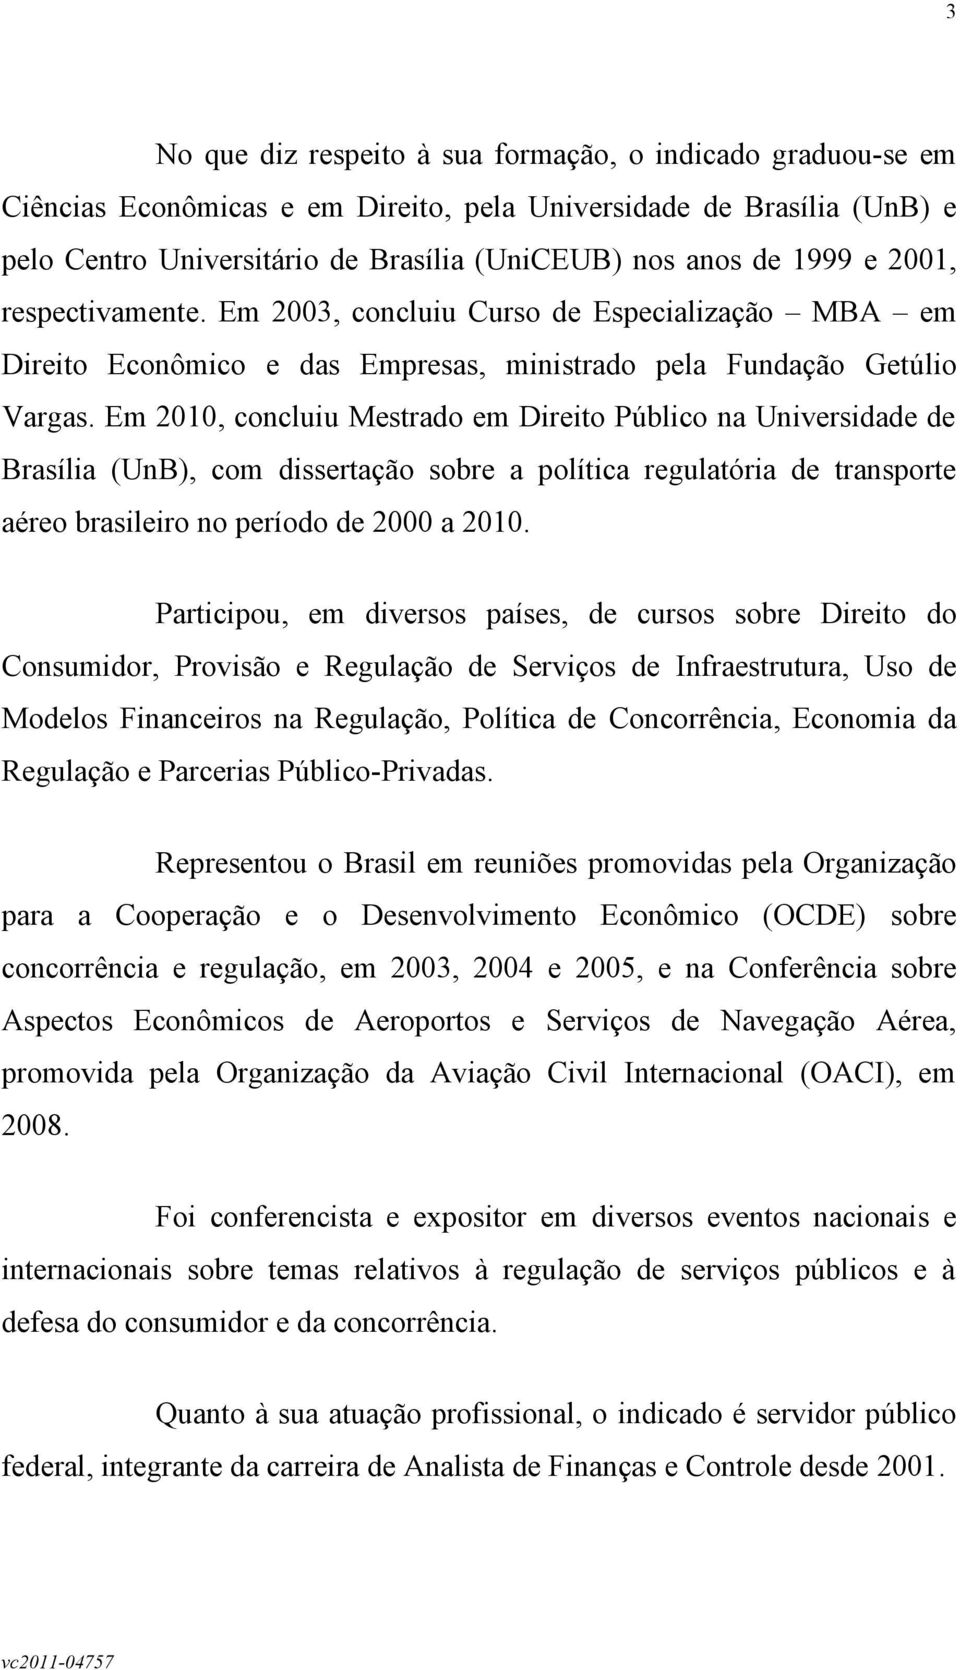 Em 2010, concluiu Mestrado em Direito Público na Universidade de Brasília (UnB), com dissertação sobre a política regulatória de transporte aéreo brasileiro no período de 2000 a 2010.